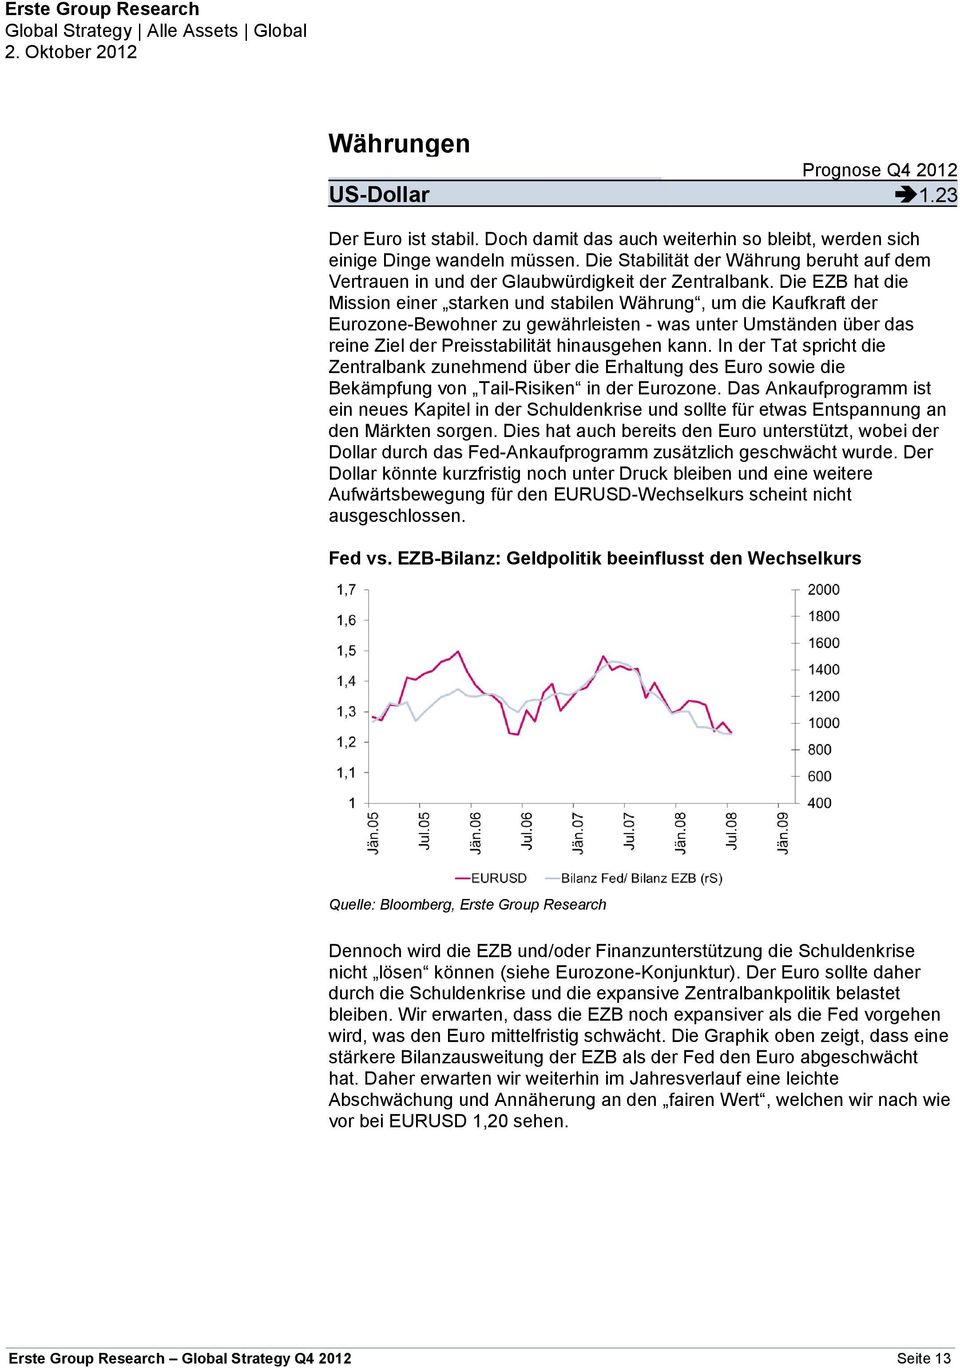 Die EZB hat die Mission einer starken und stabilen Währung, um die Kaufkraft der Eurozone-Bewohner zu gewährleisten - was unter Umständen über das reine Ziel der Preisstabilität hinausgehen kann.